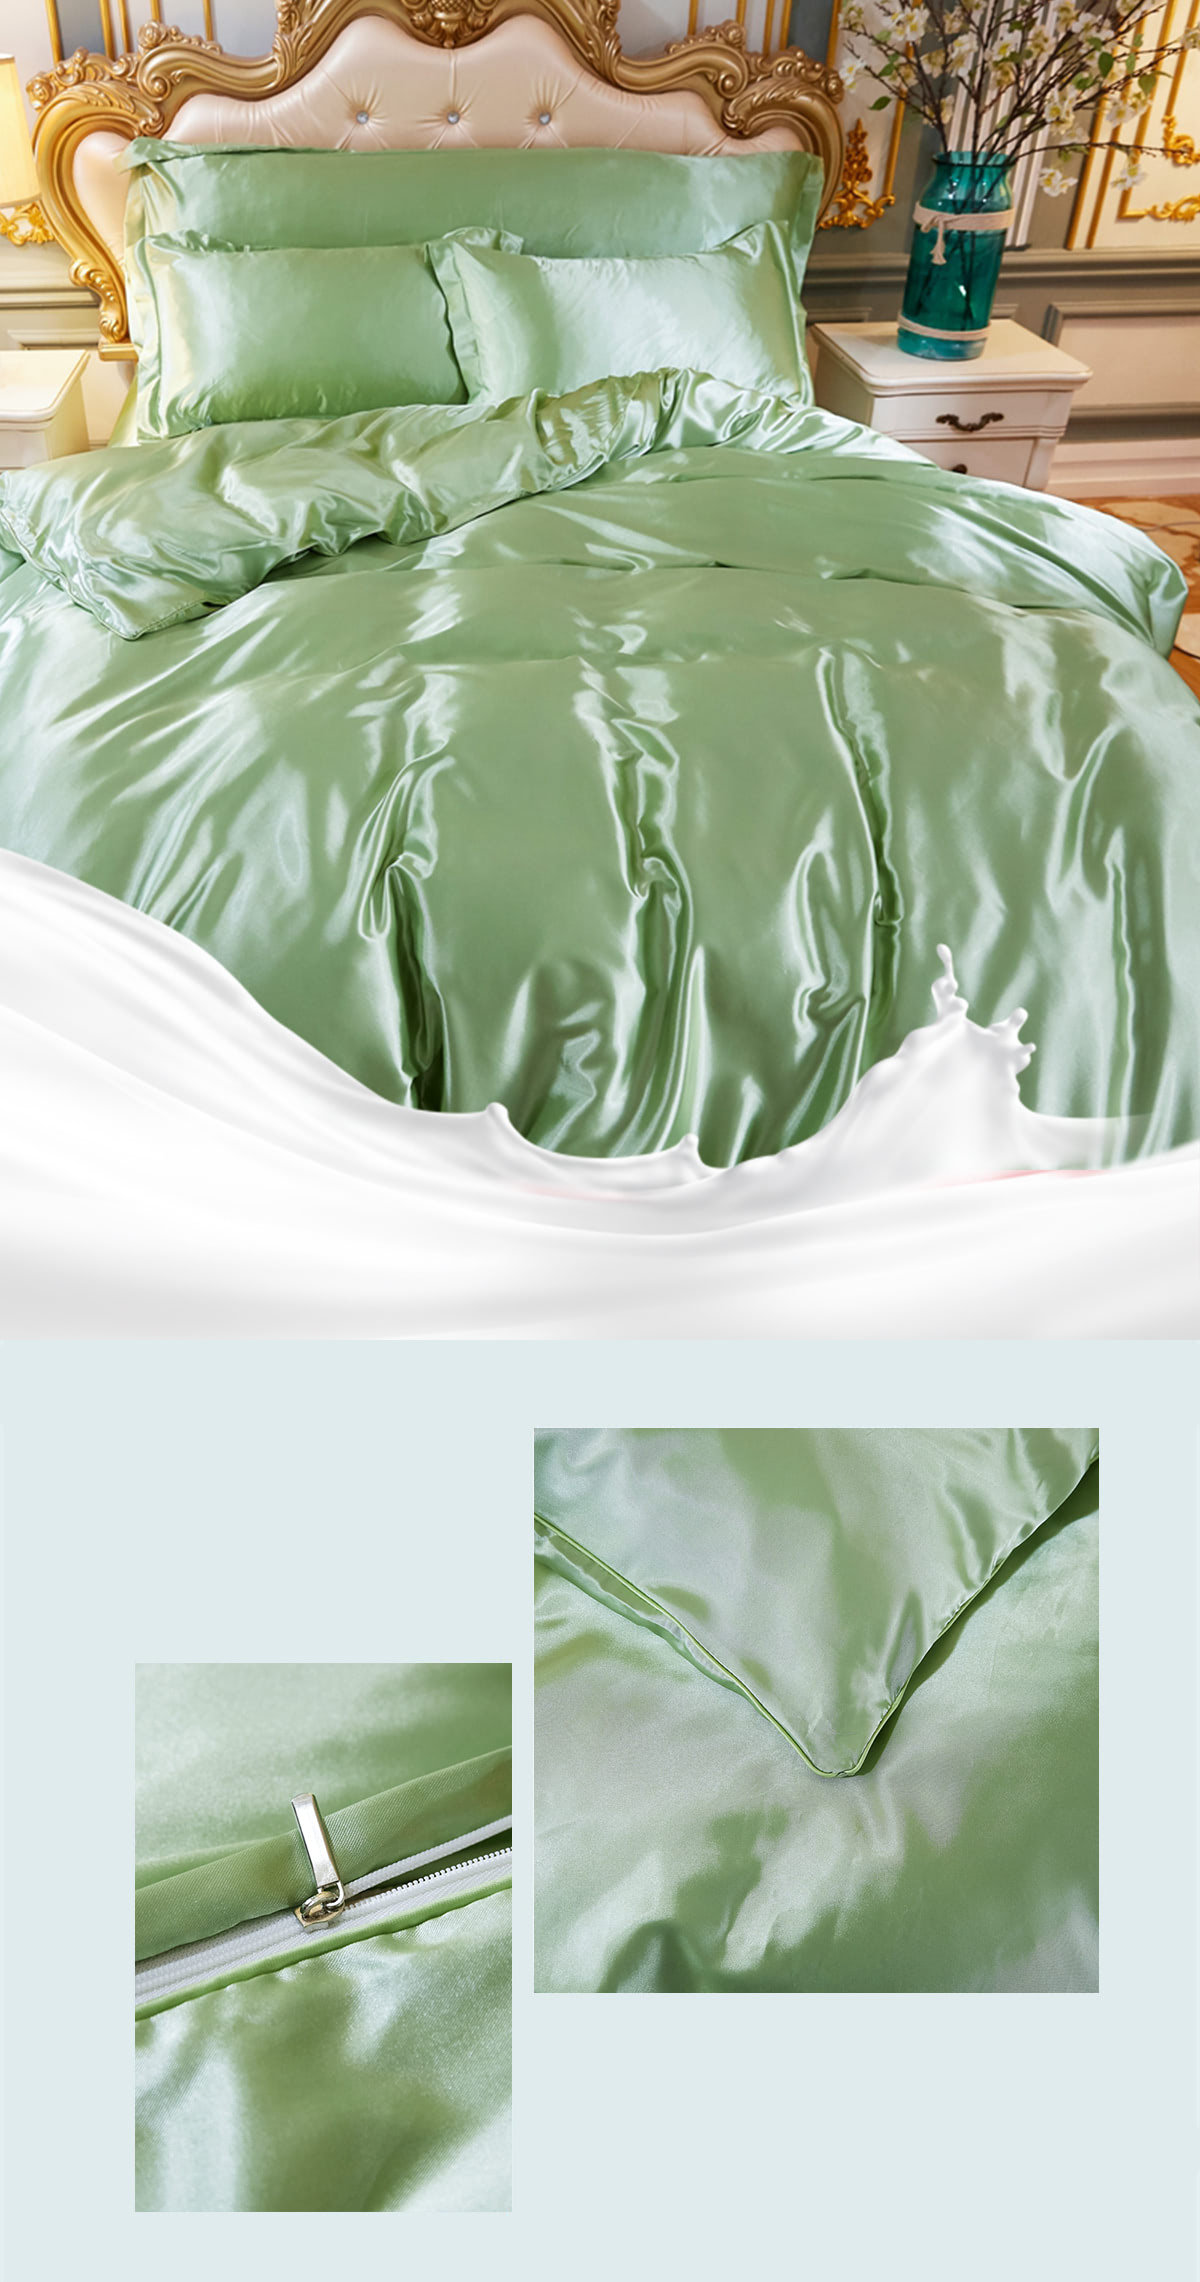 Ultra-Soft-Silky-Satin-Bedding-Linen-Duvet-Cover-4-Pcs-Set25.jpg